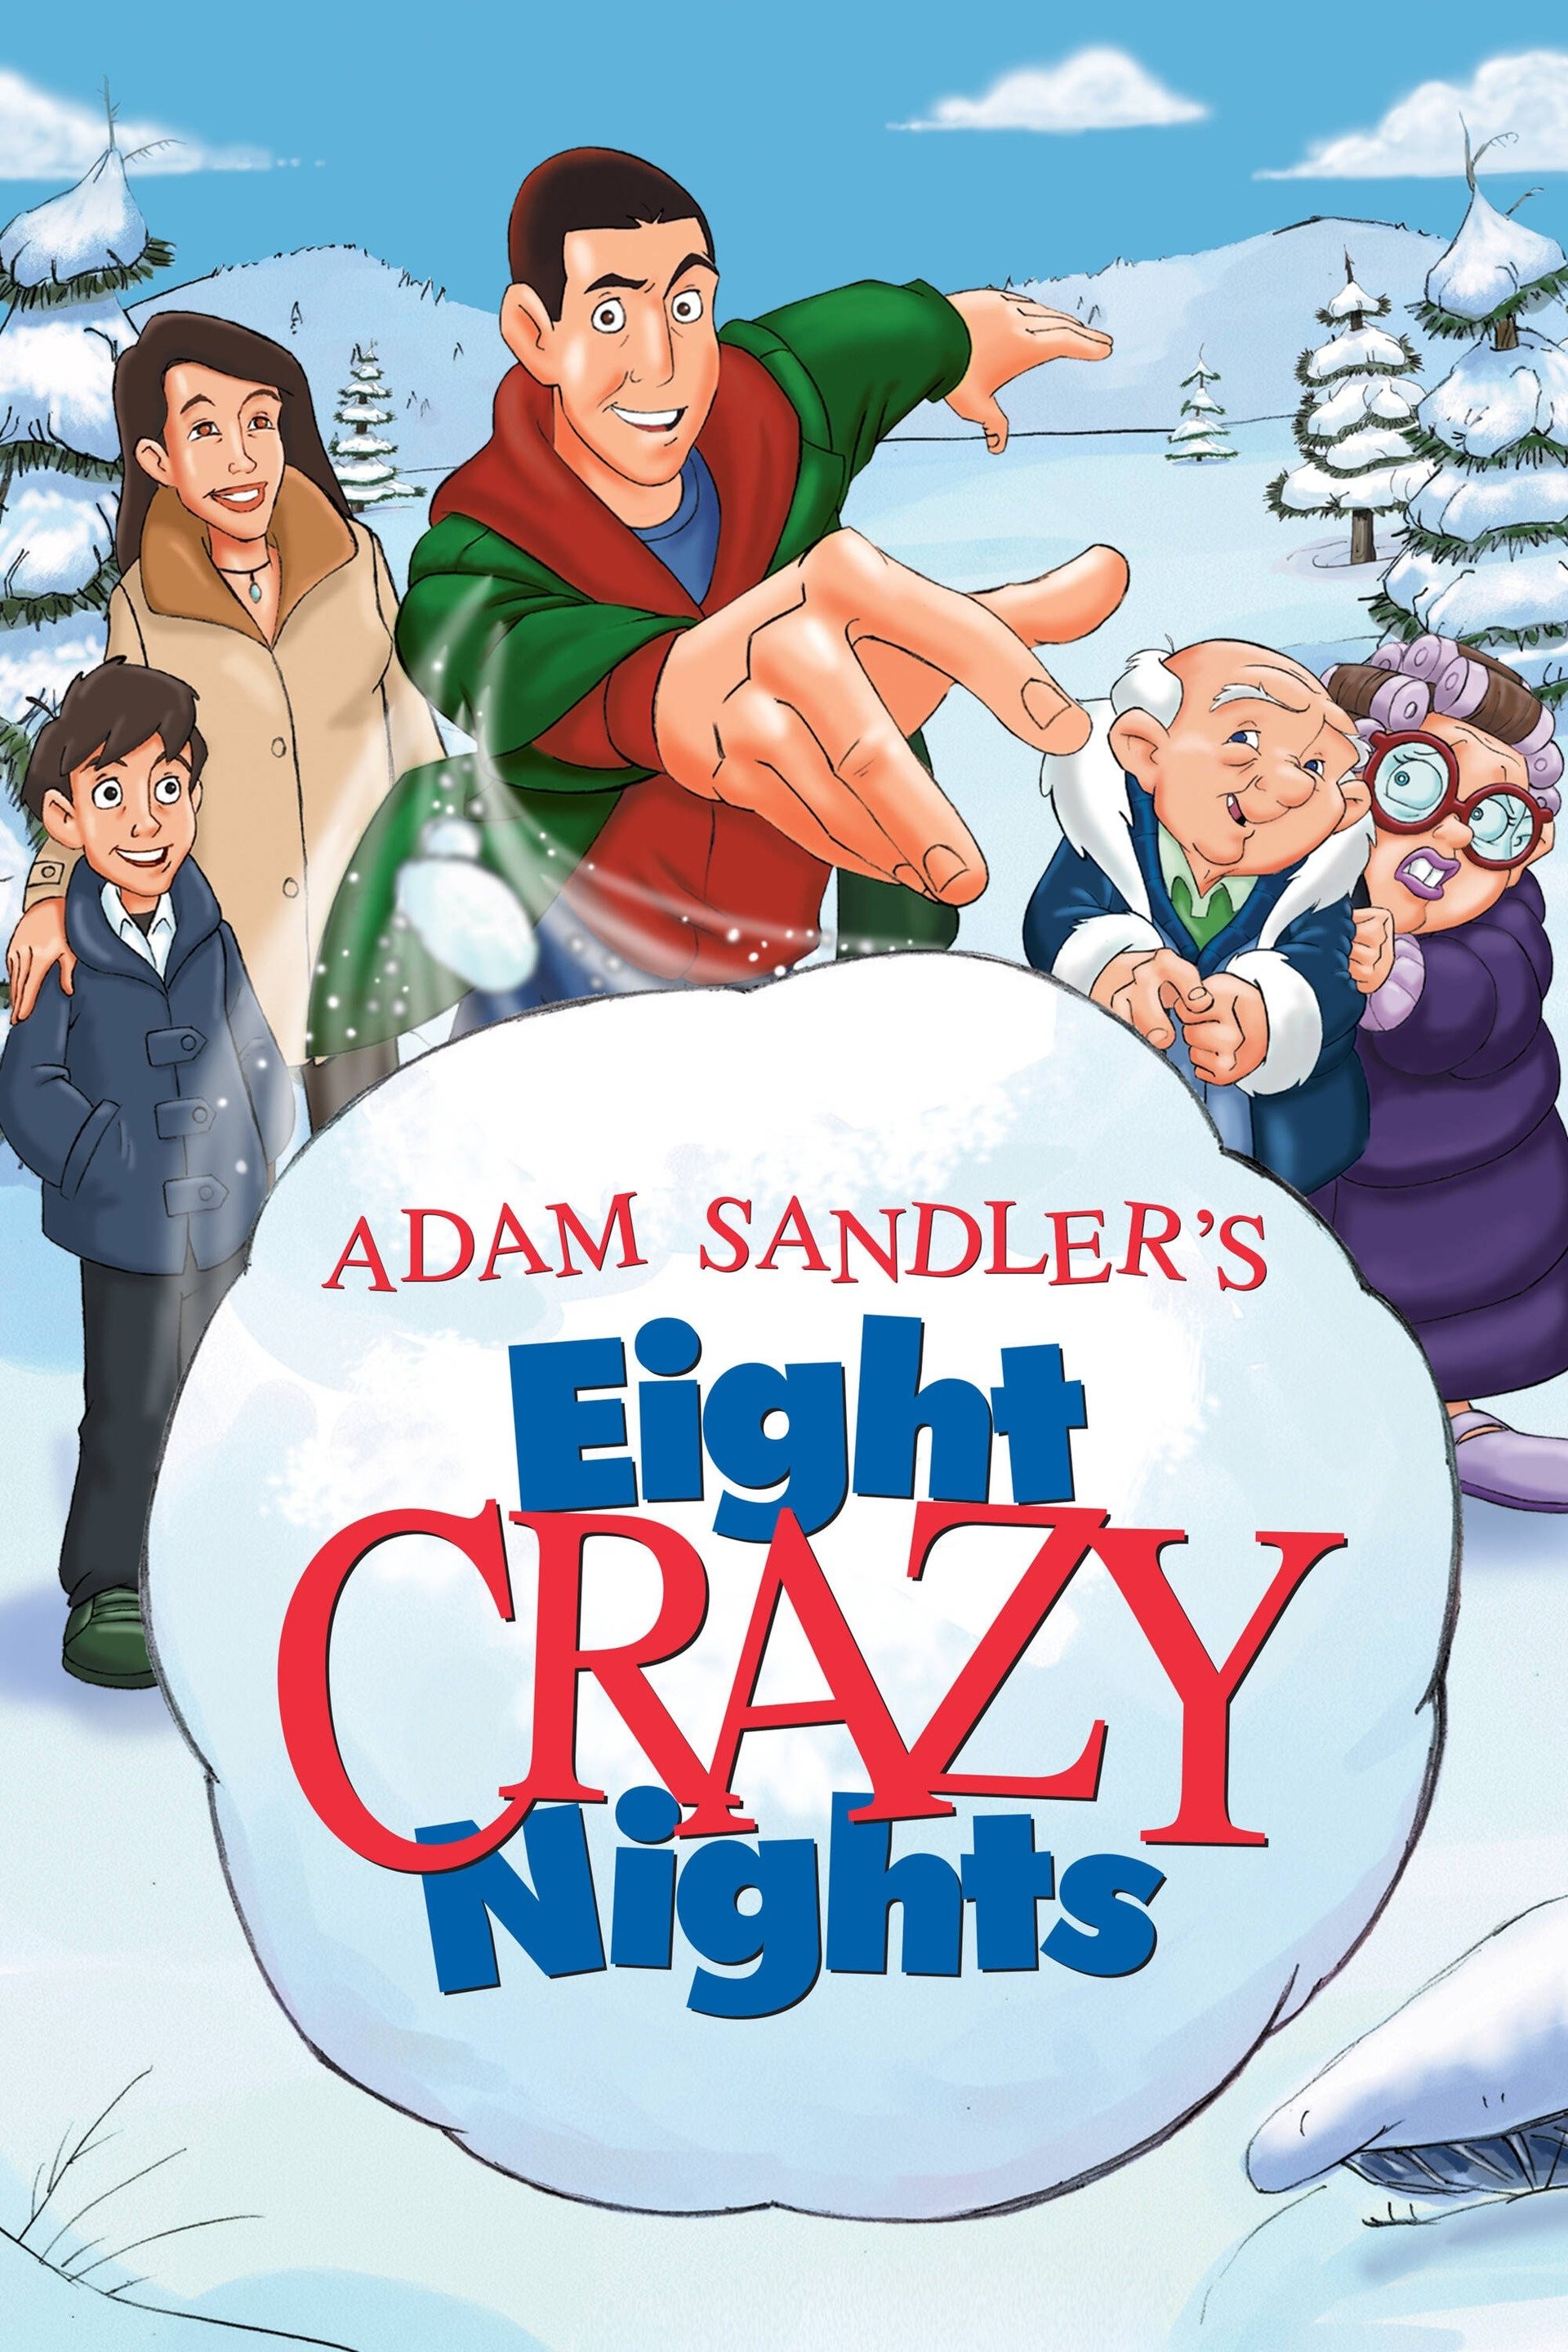 Adam Sandler's 8 Crazy Nights Review